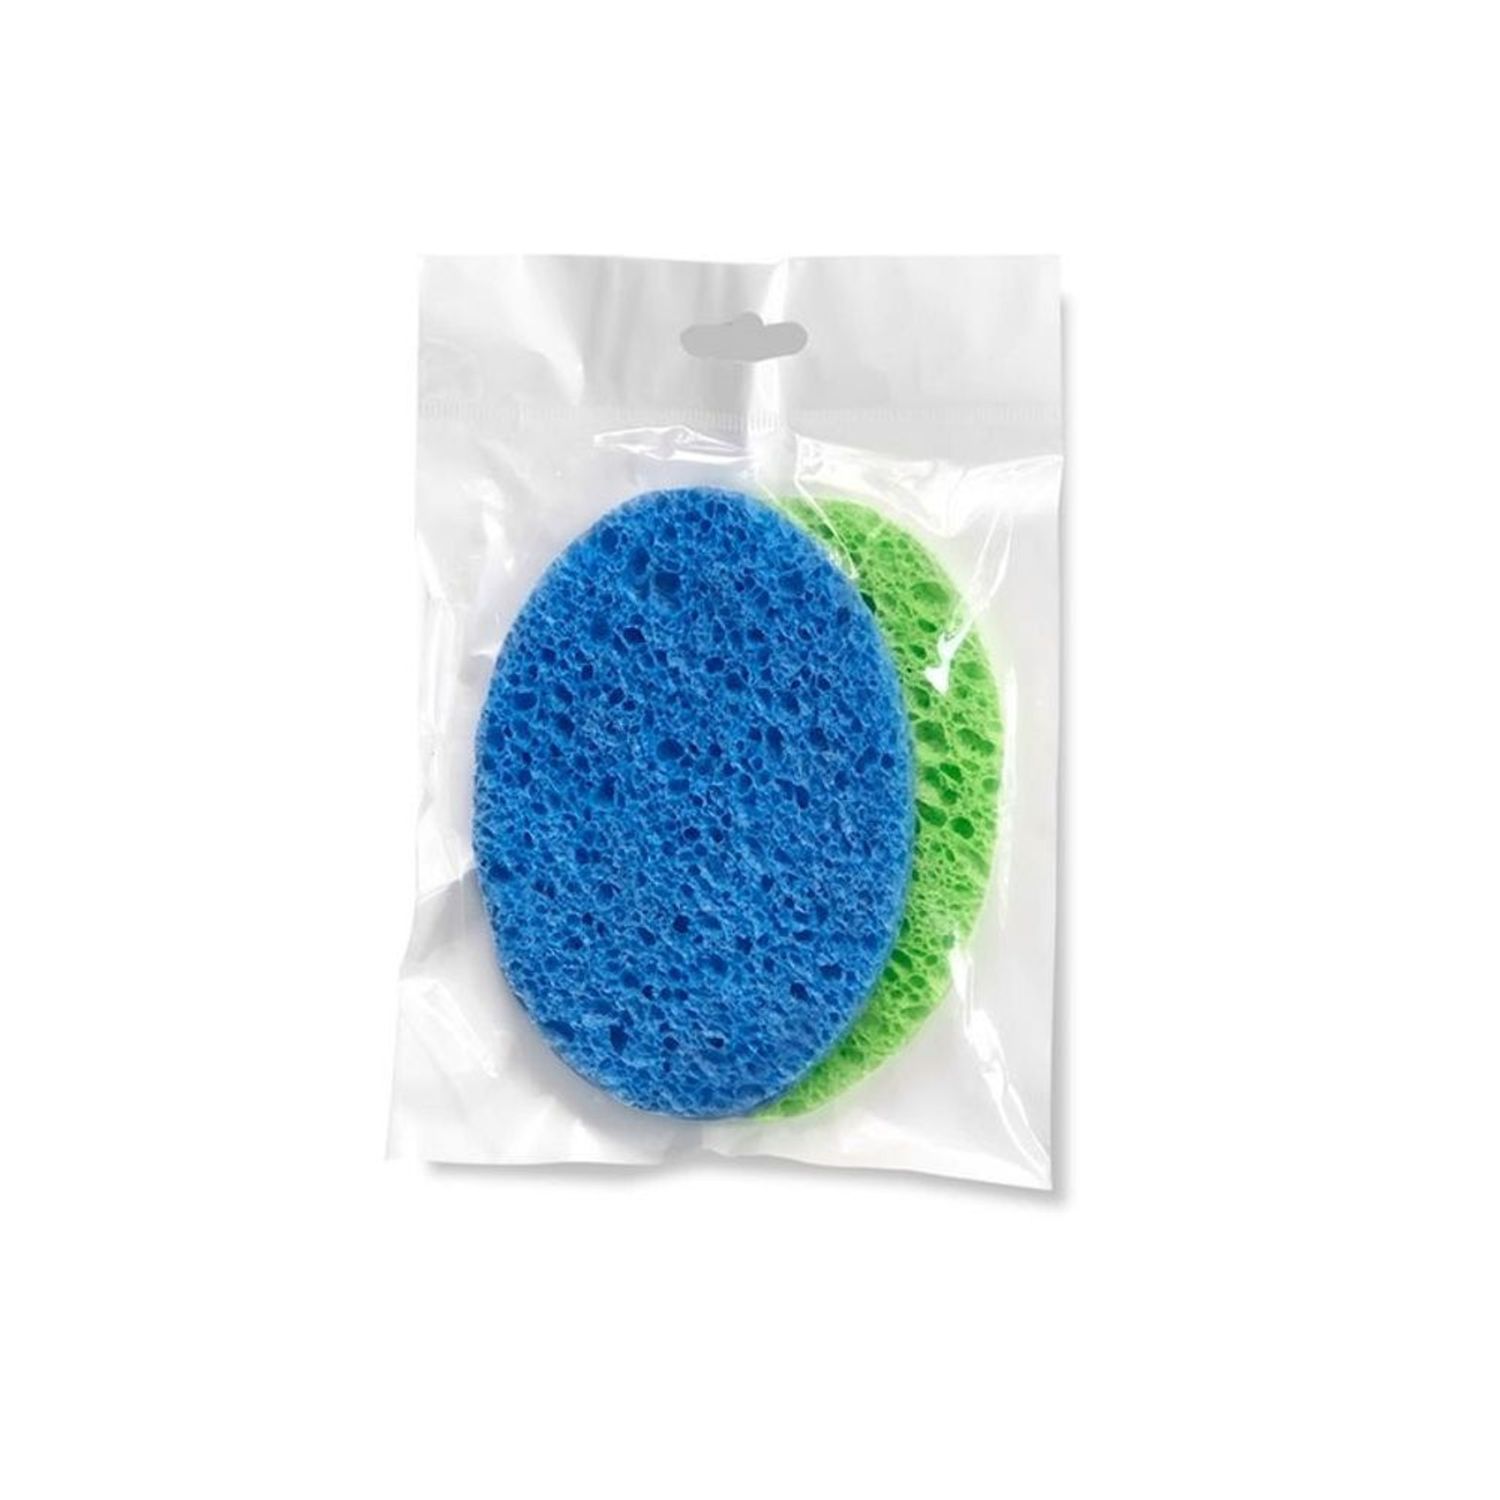  Esponja de limpieza de celulosa, esponja de celulosa